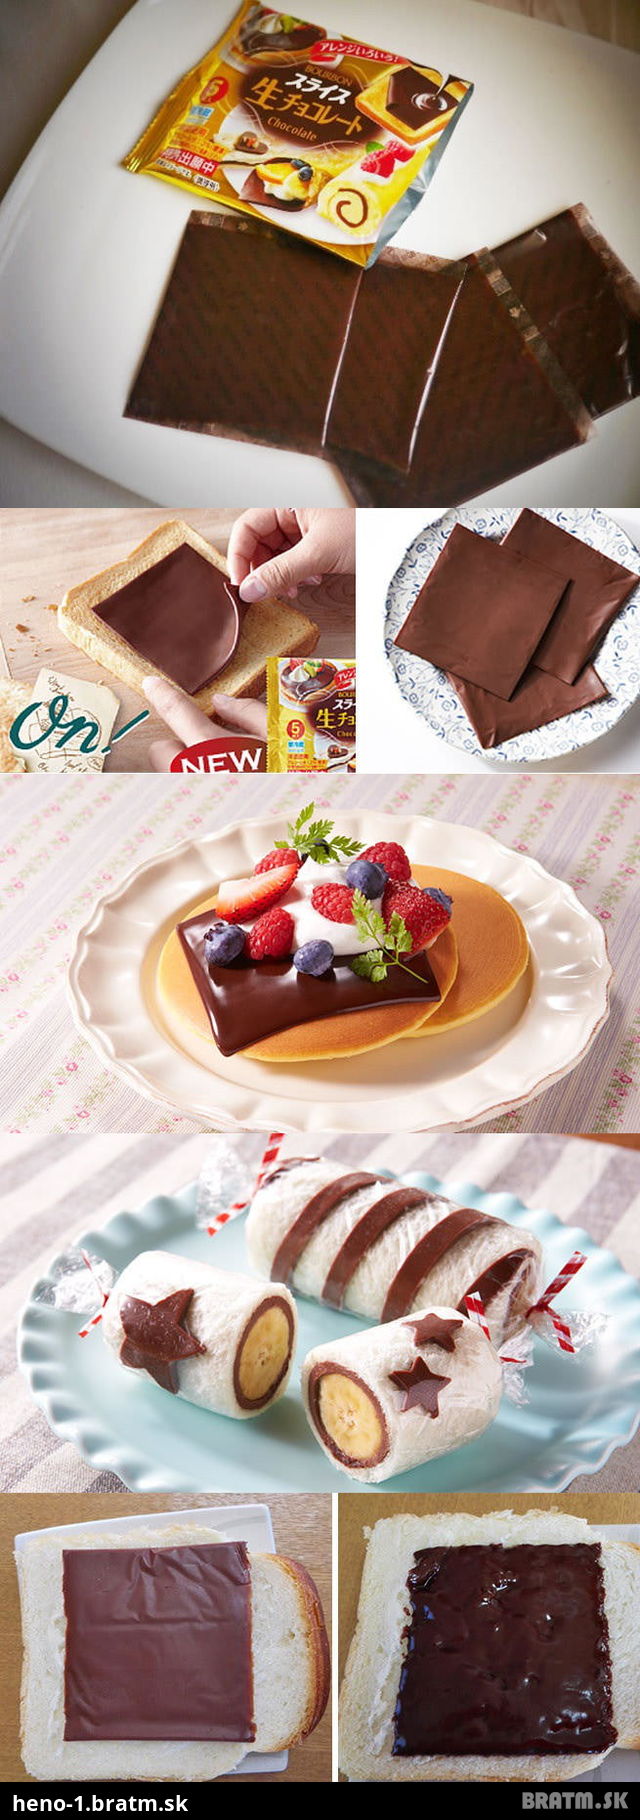 WAU! Vynález roka 2015! Plátková čokoláda...mňááám